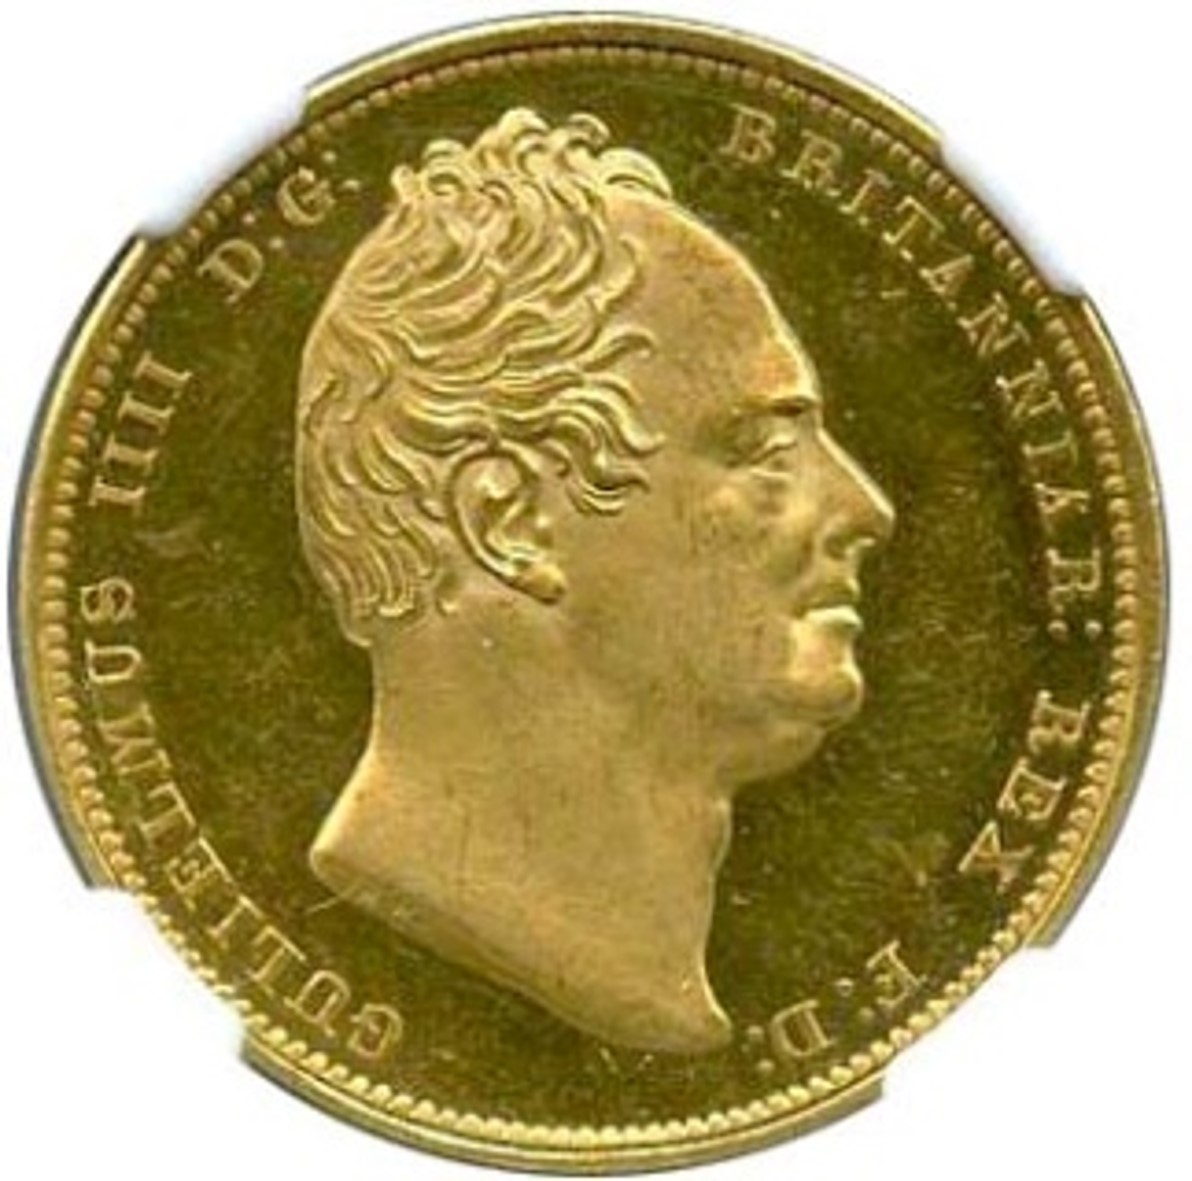 イギリス ウィリアム4世(1830-1837) 2ポンド金貨 1831 Fr382 KM718 